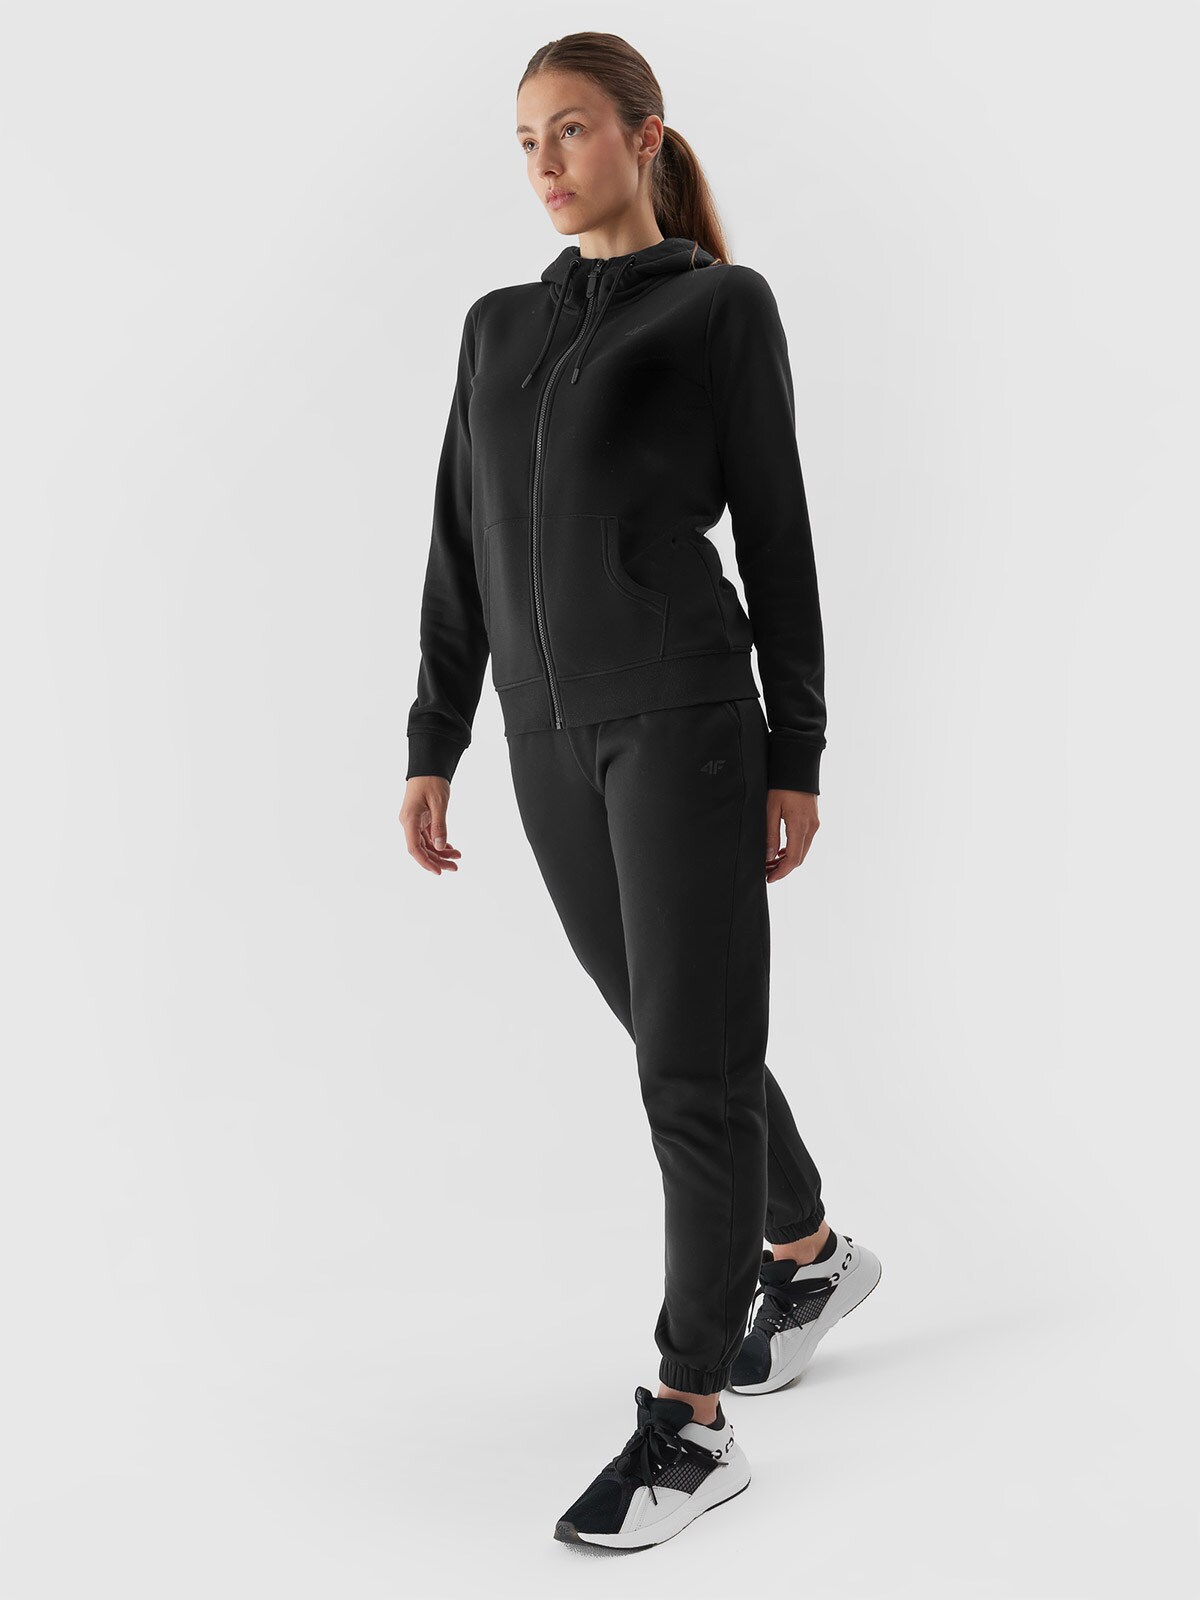 Dámske teplákové nohavice typu jogger - čierne